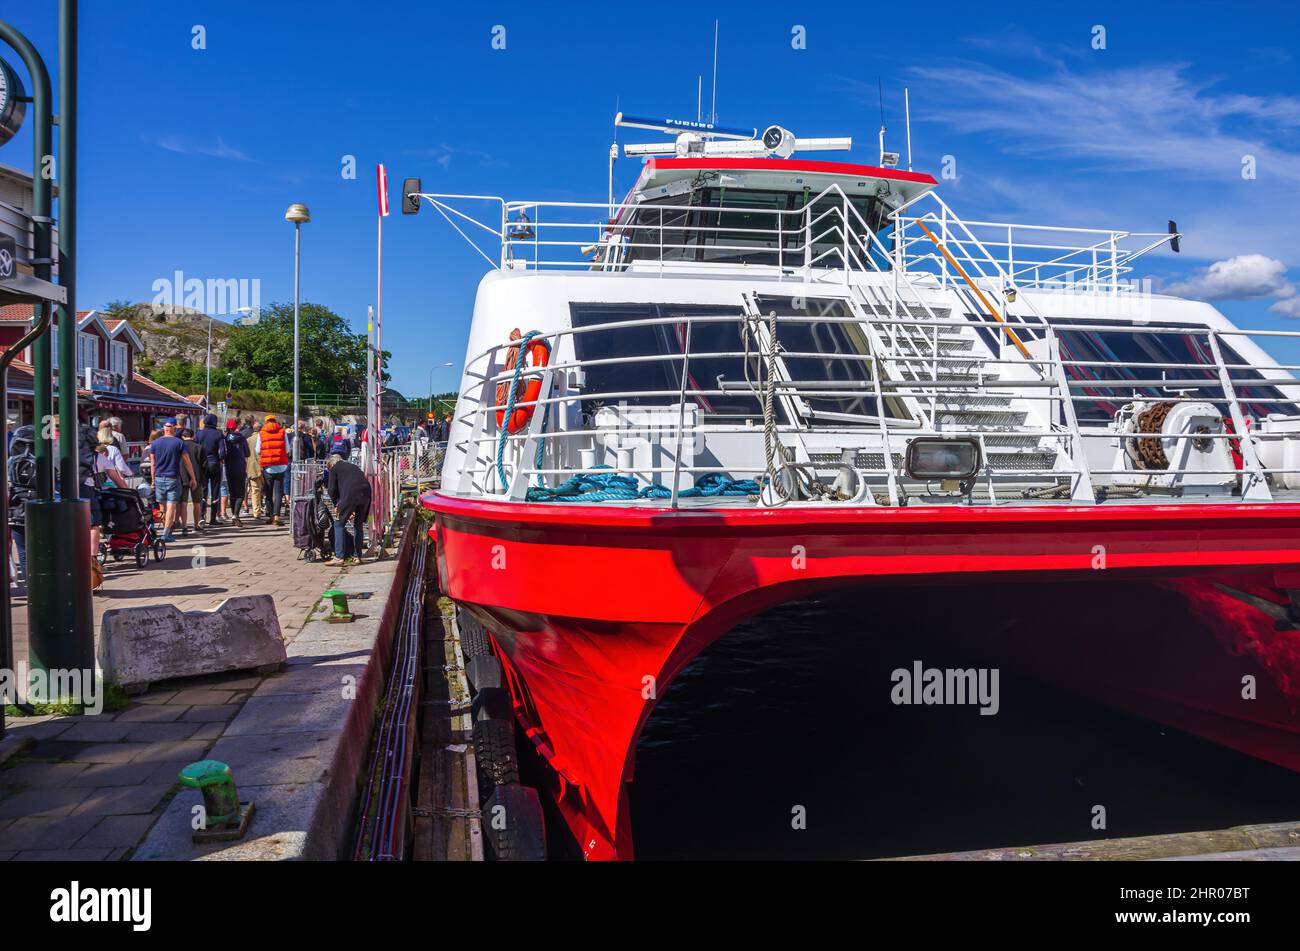 Strömstad, Bohuslän, Västra Götalands län, Sweden: Docked passenger ferry at the terminal, August 11, 2016. Stock Photo